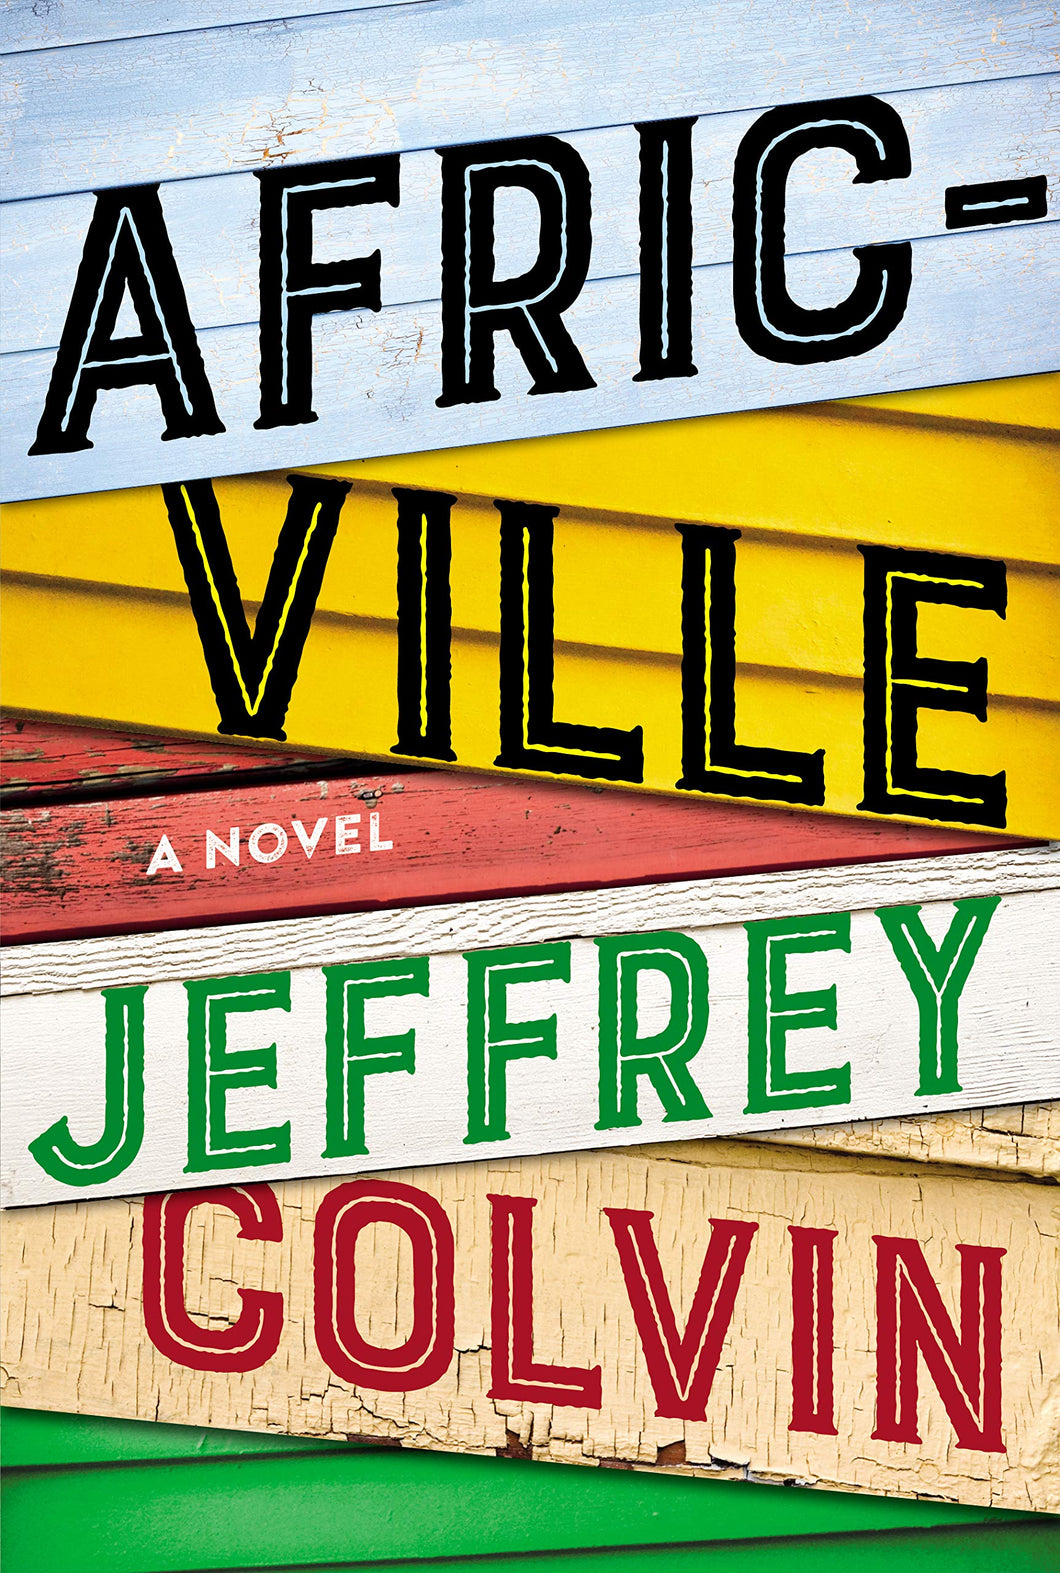 Africville [Jeffrey Colvin]